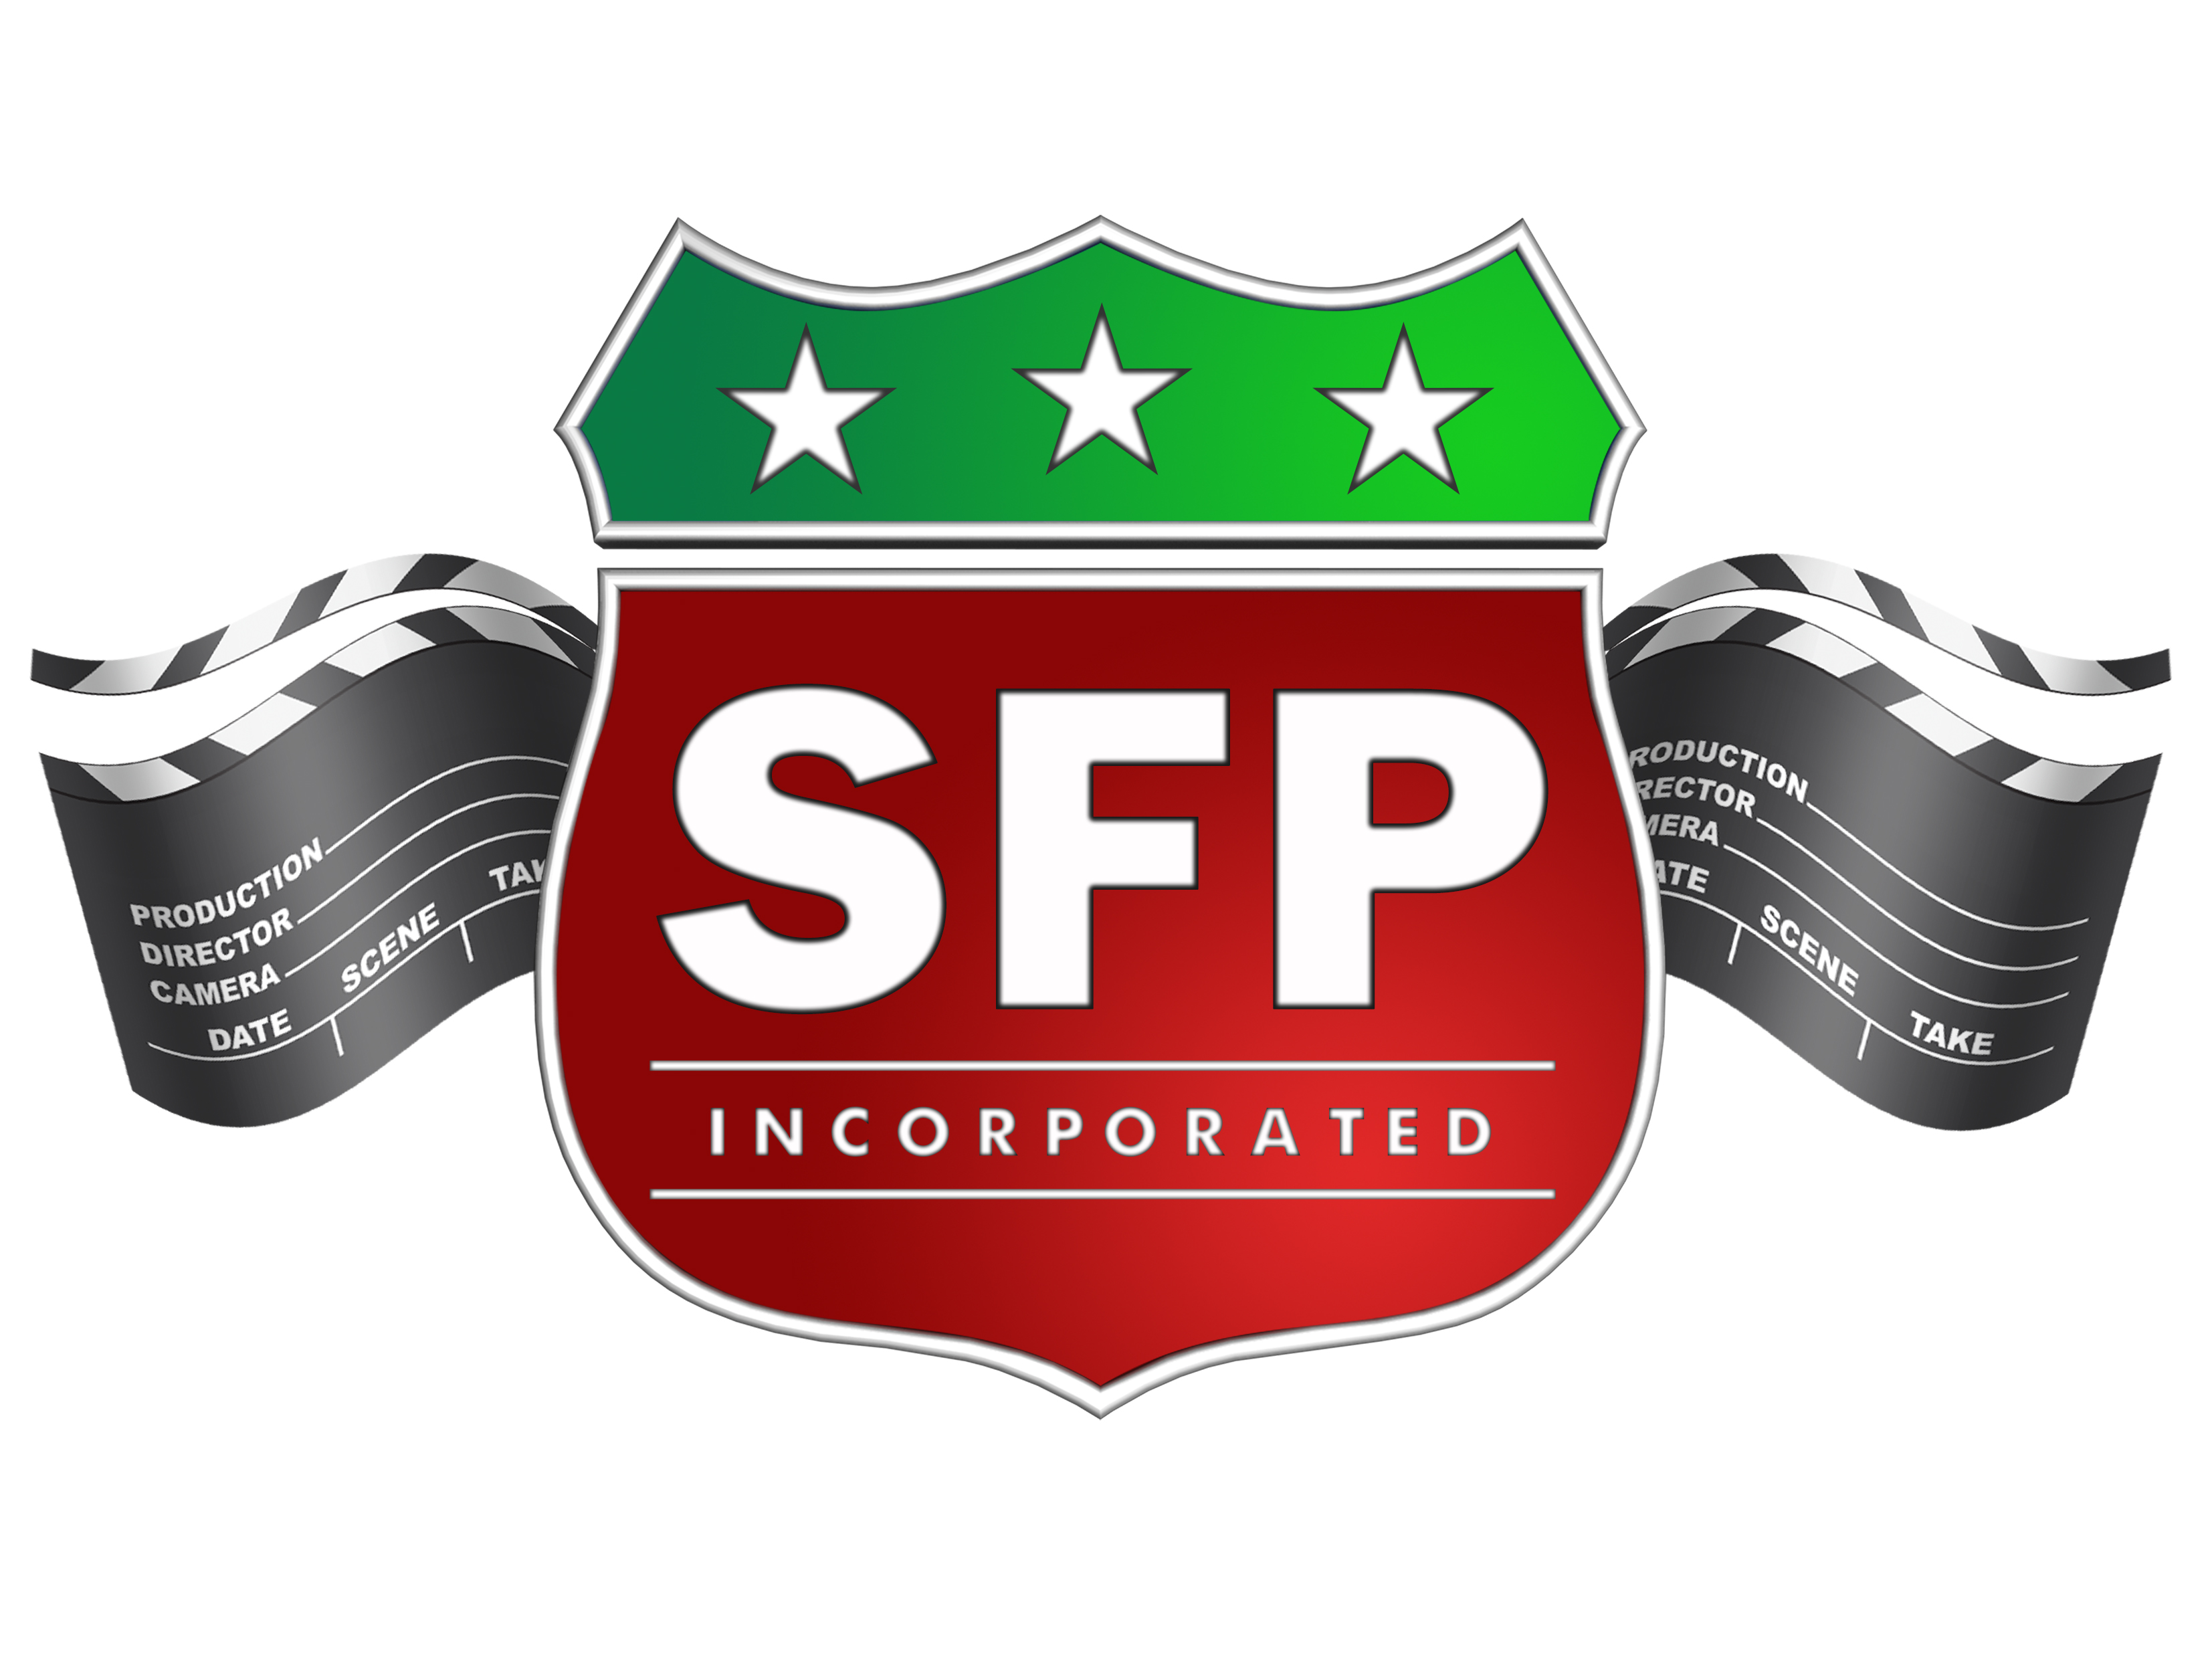 Solomon Films Production, Inc.